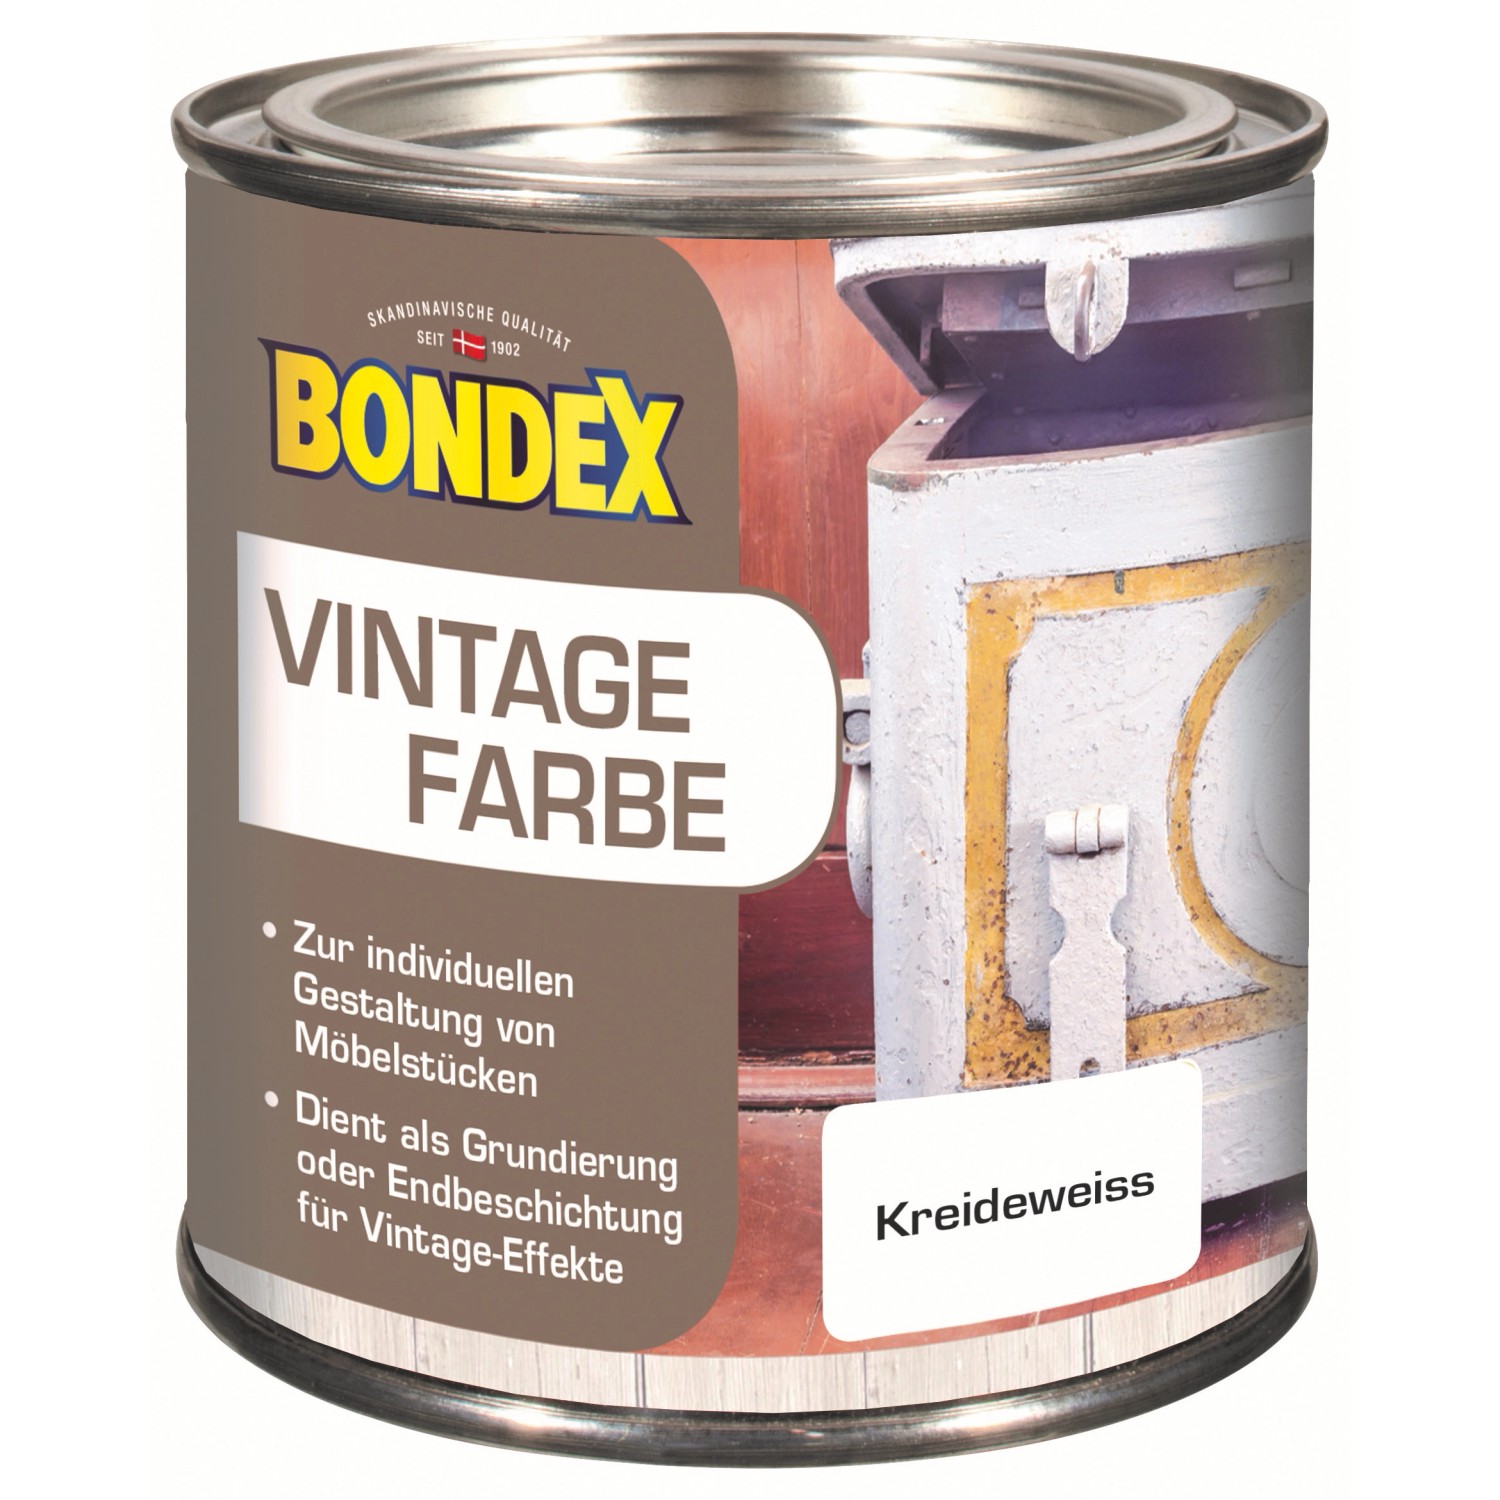 Bondex Vintage Farbe Kreideweiß 375 ml